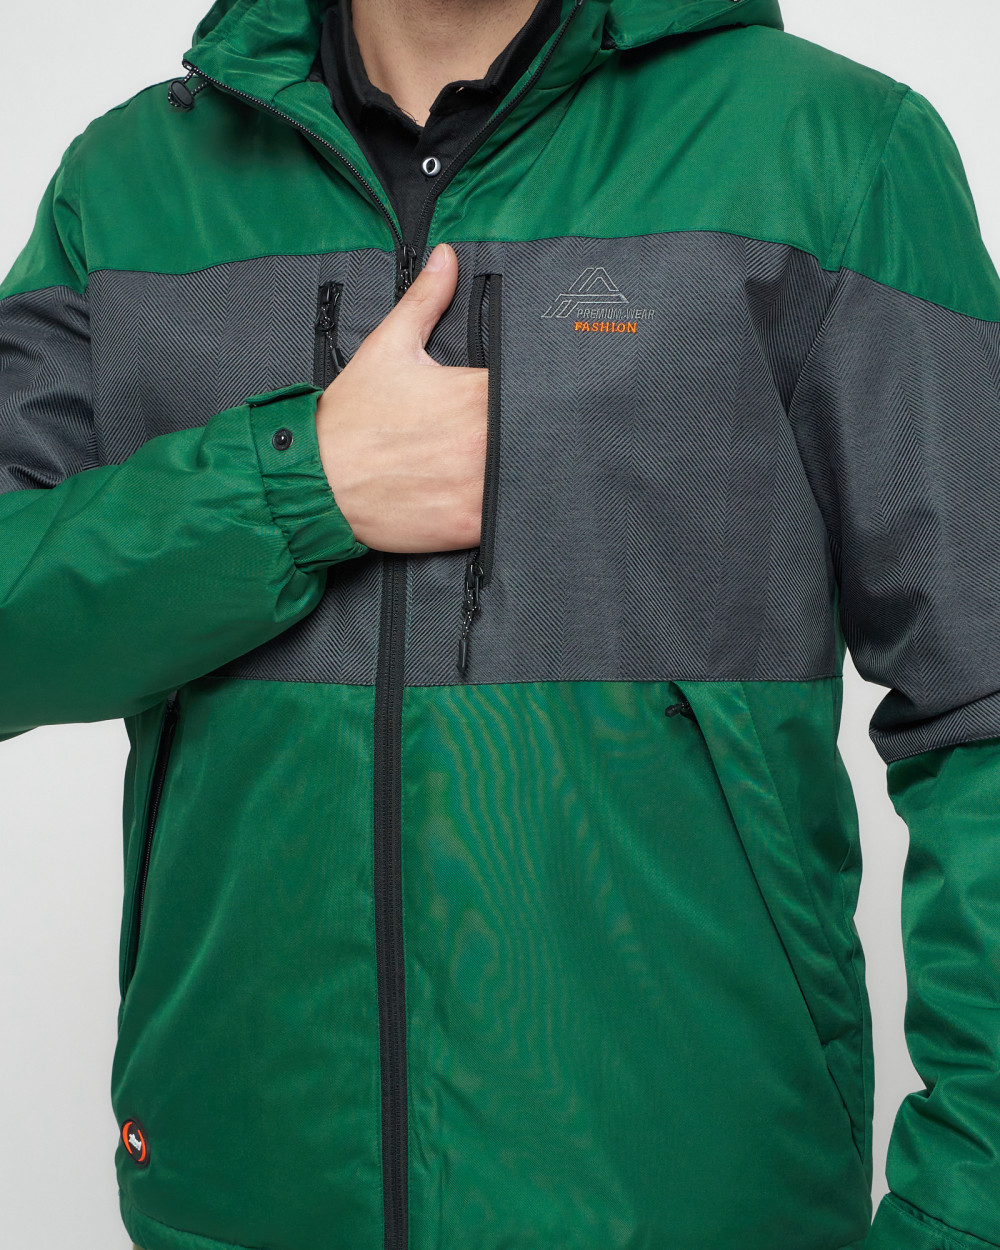 Купить куртку мужскую спортивную весеннюю оптом от производителя недорого в Москве 8808Z 1